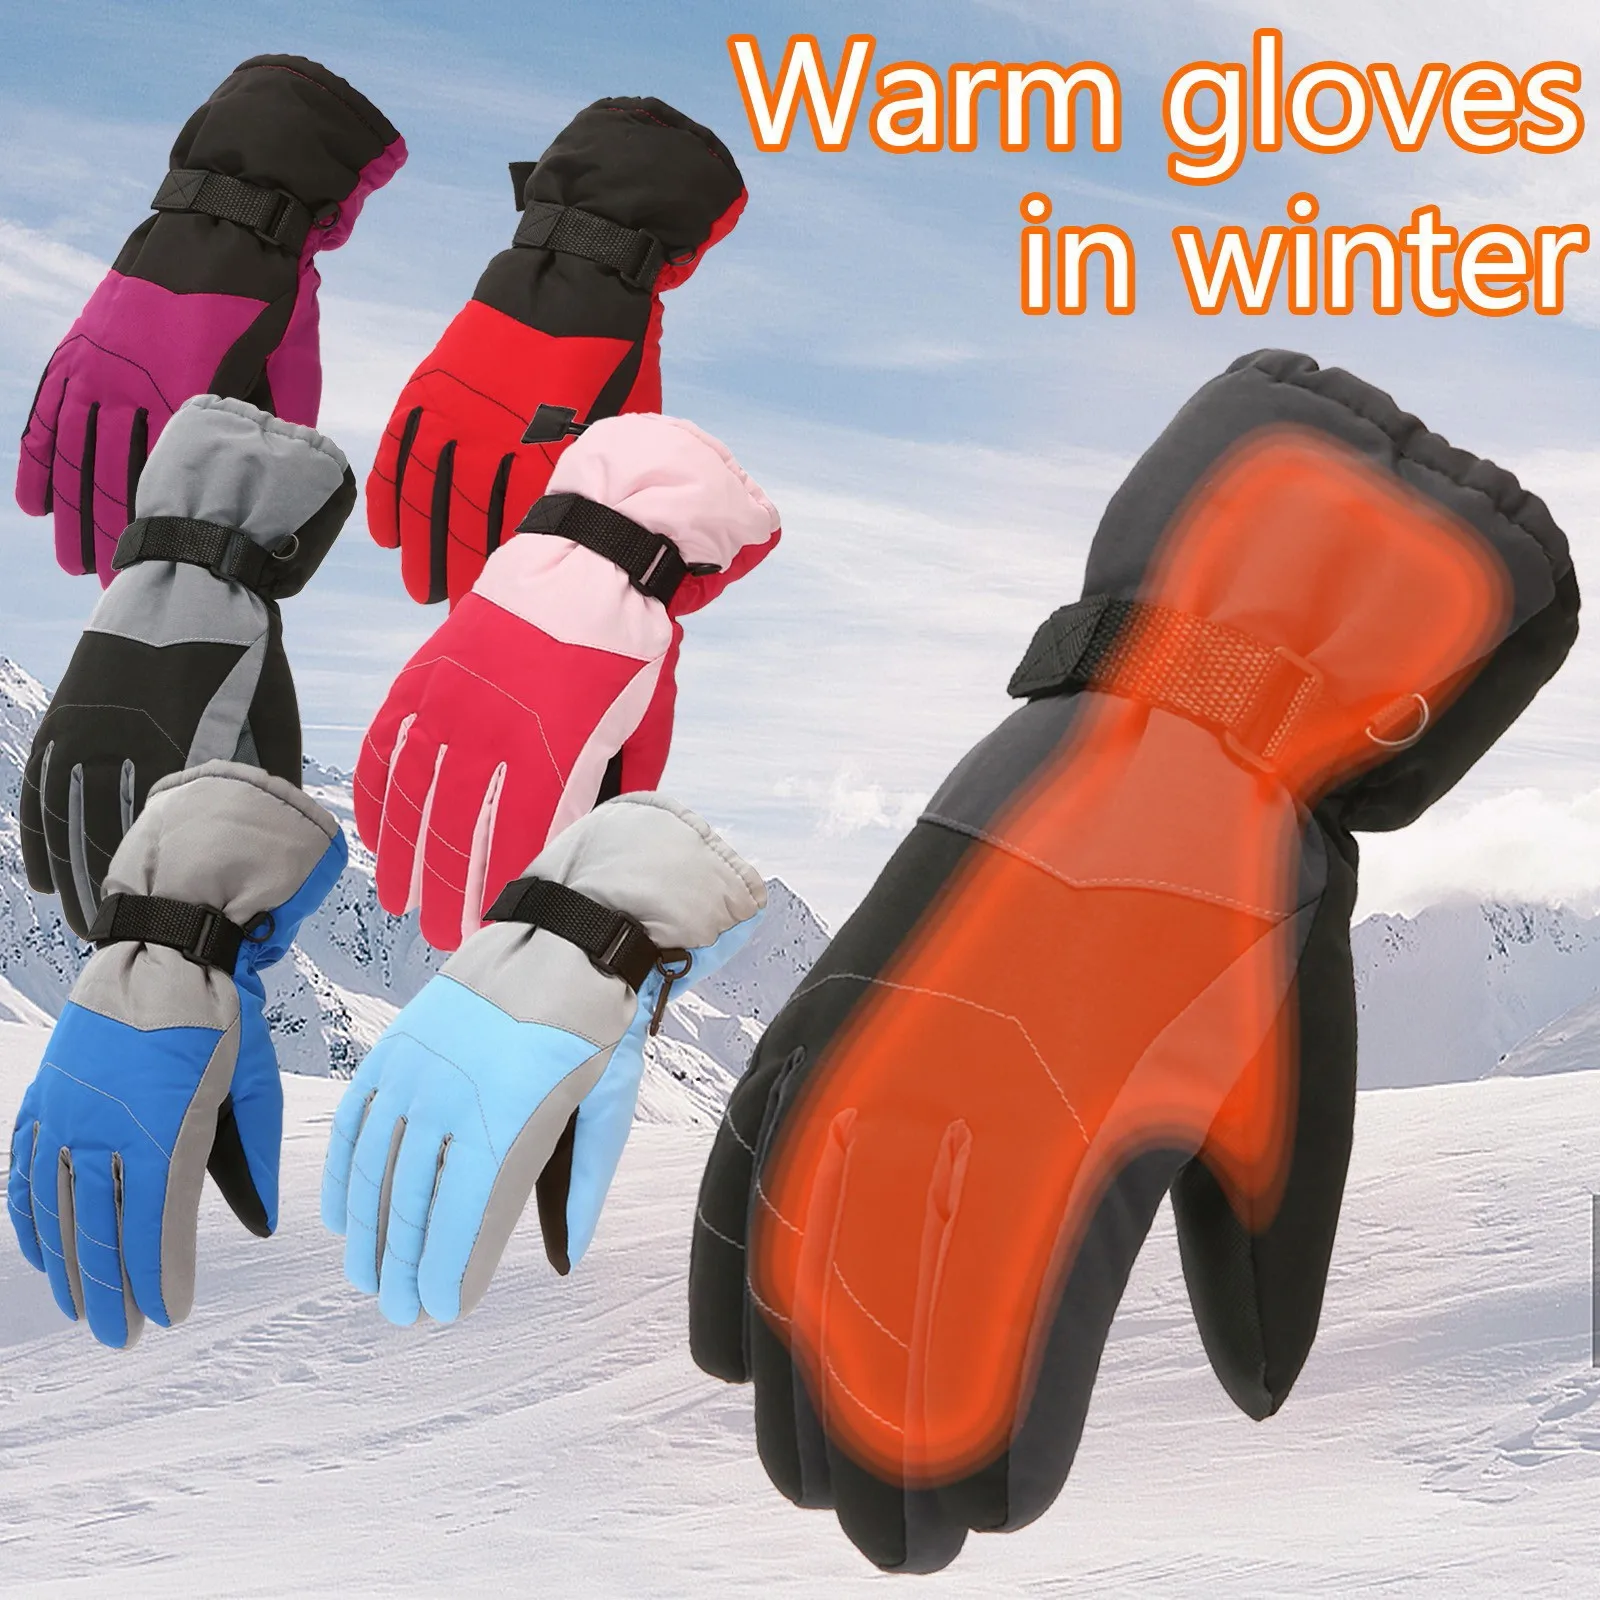 

Children Boys Girls Snowmobile Winter Warm Ski Gloves Sports Waterproof Windproof Snow Mitten Adjustable Ski Strap Skiing Gloves